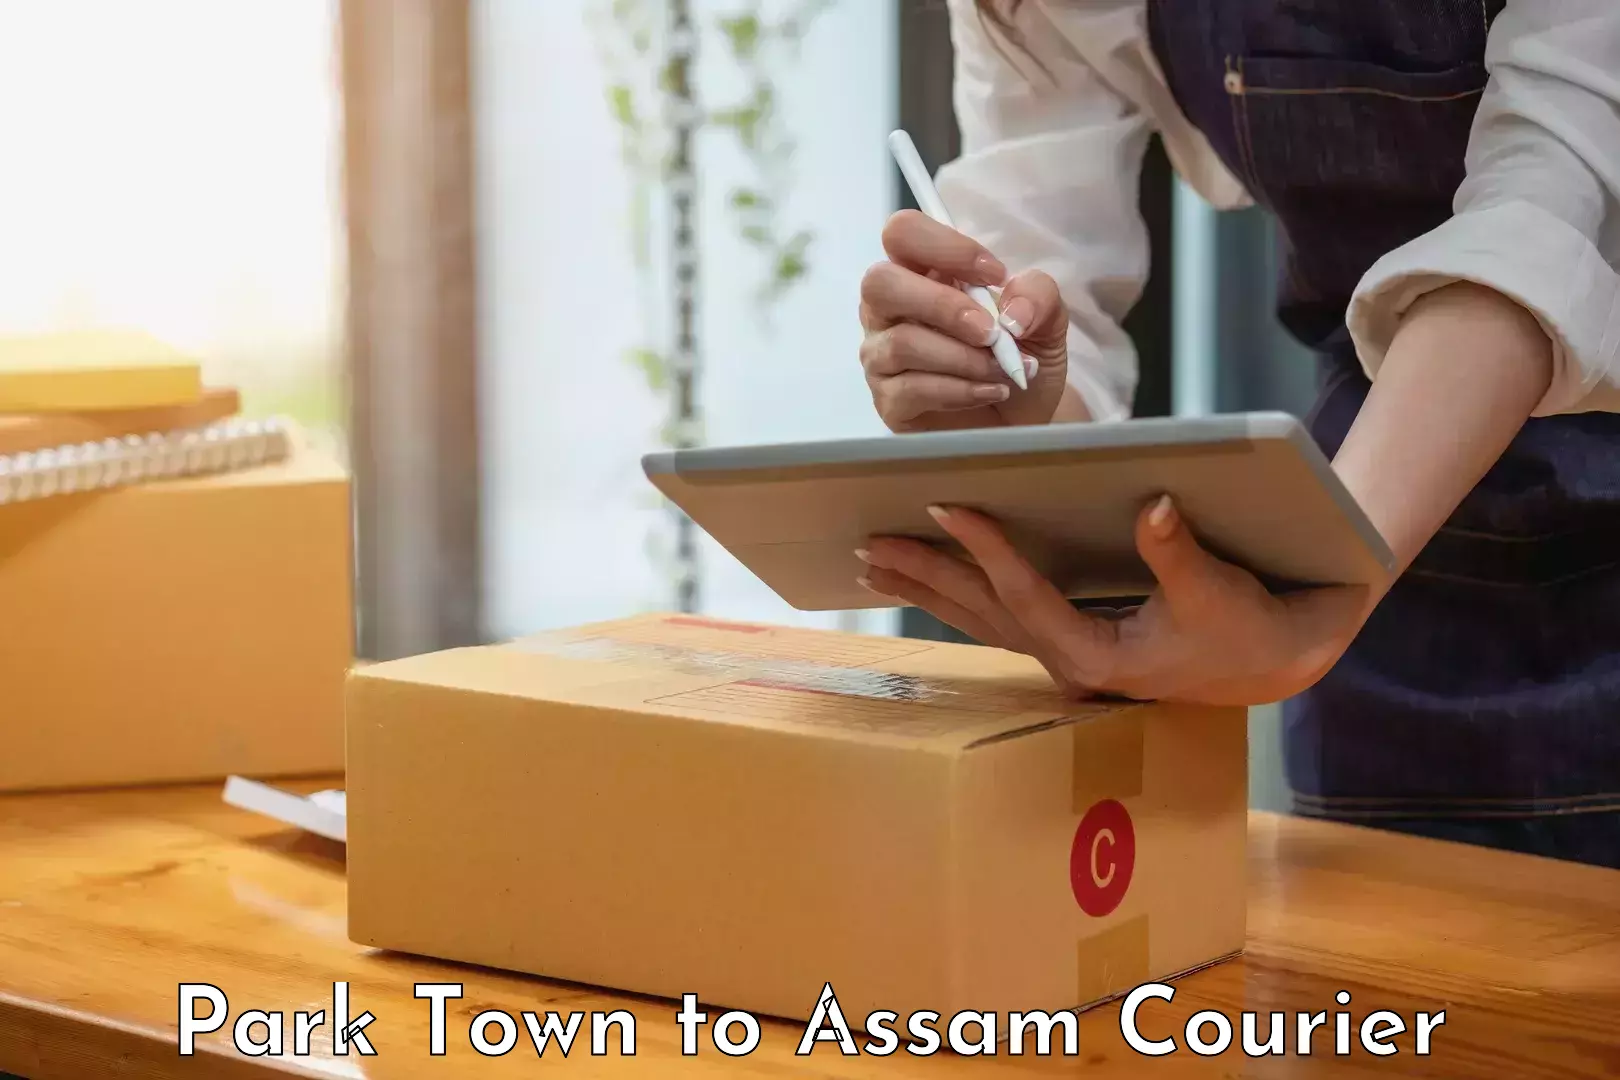 24/7 courier service Park Town to Baksha Bodoland